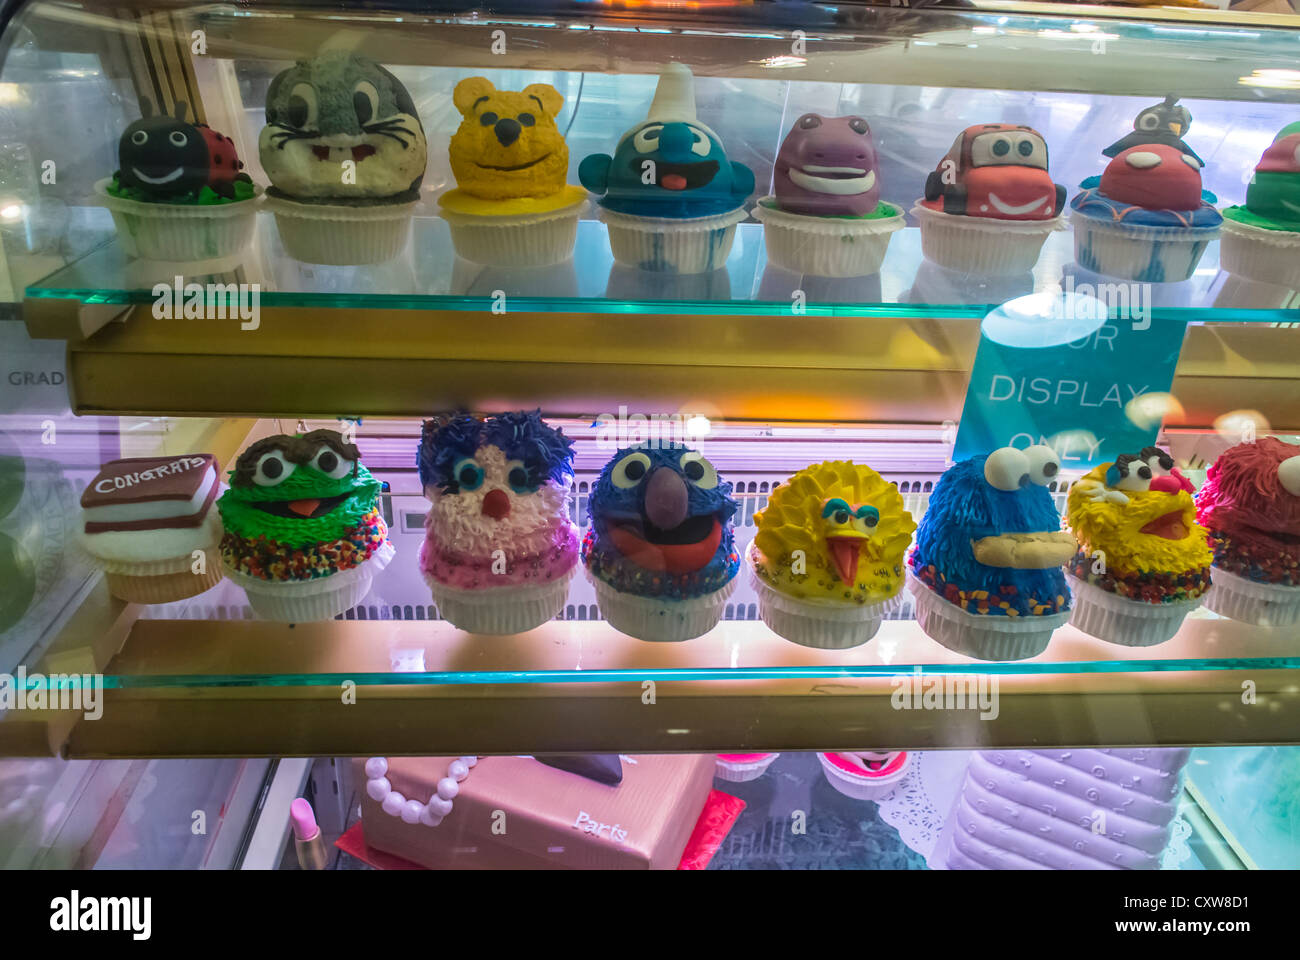 New York City, NY, USA, amerikanische Cupcakes auf dem Display in "Eleni" Bäckerei Shop Frontscheibe, im Chelsea Market, Shopping Center, Manhattan Stockfoto